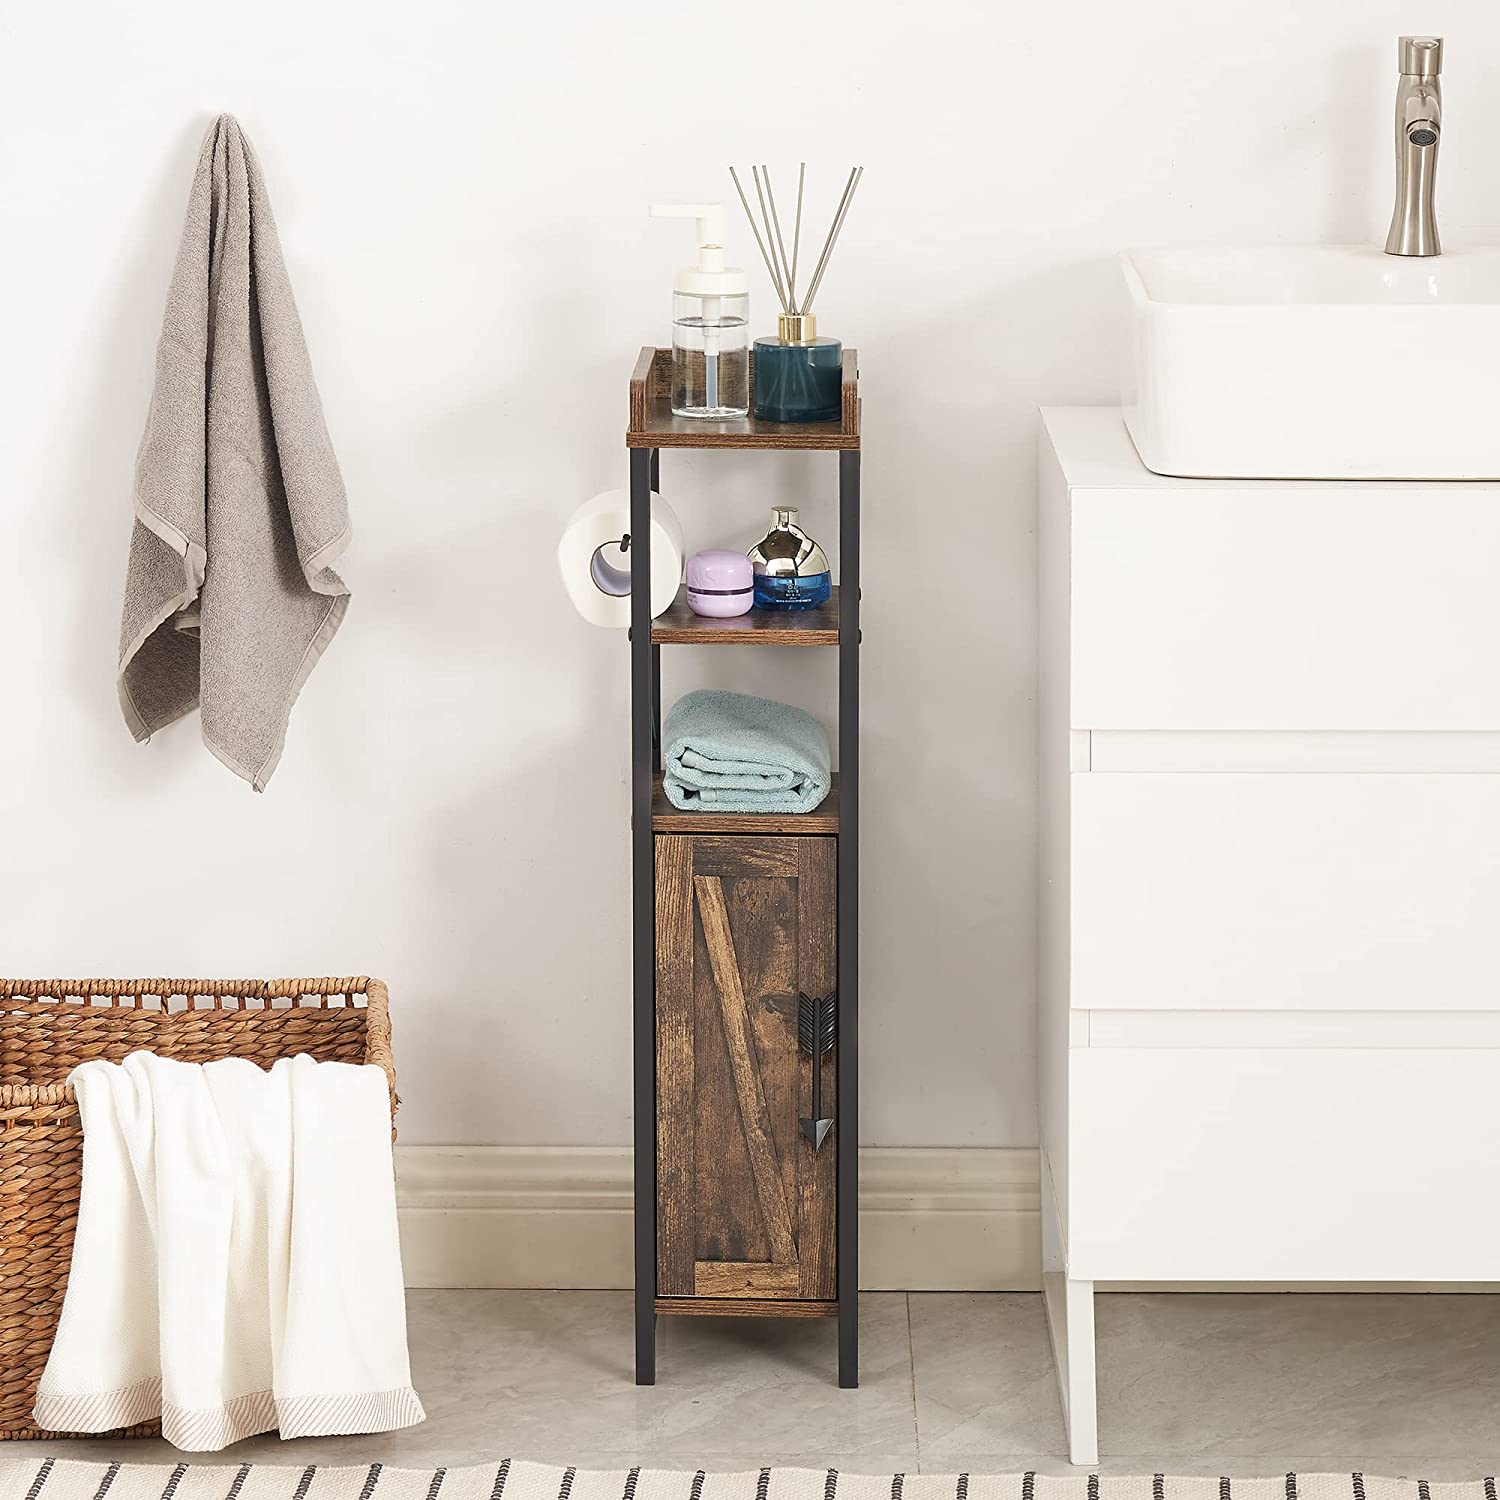 VECELO Small Bathroom Cabinet, Slim Toilet Paper Holder with Door & 2